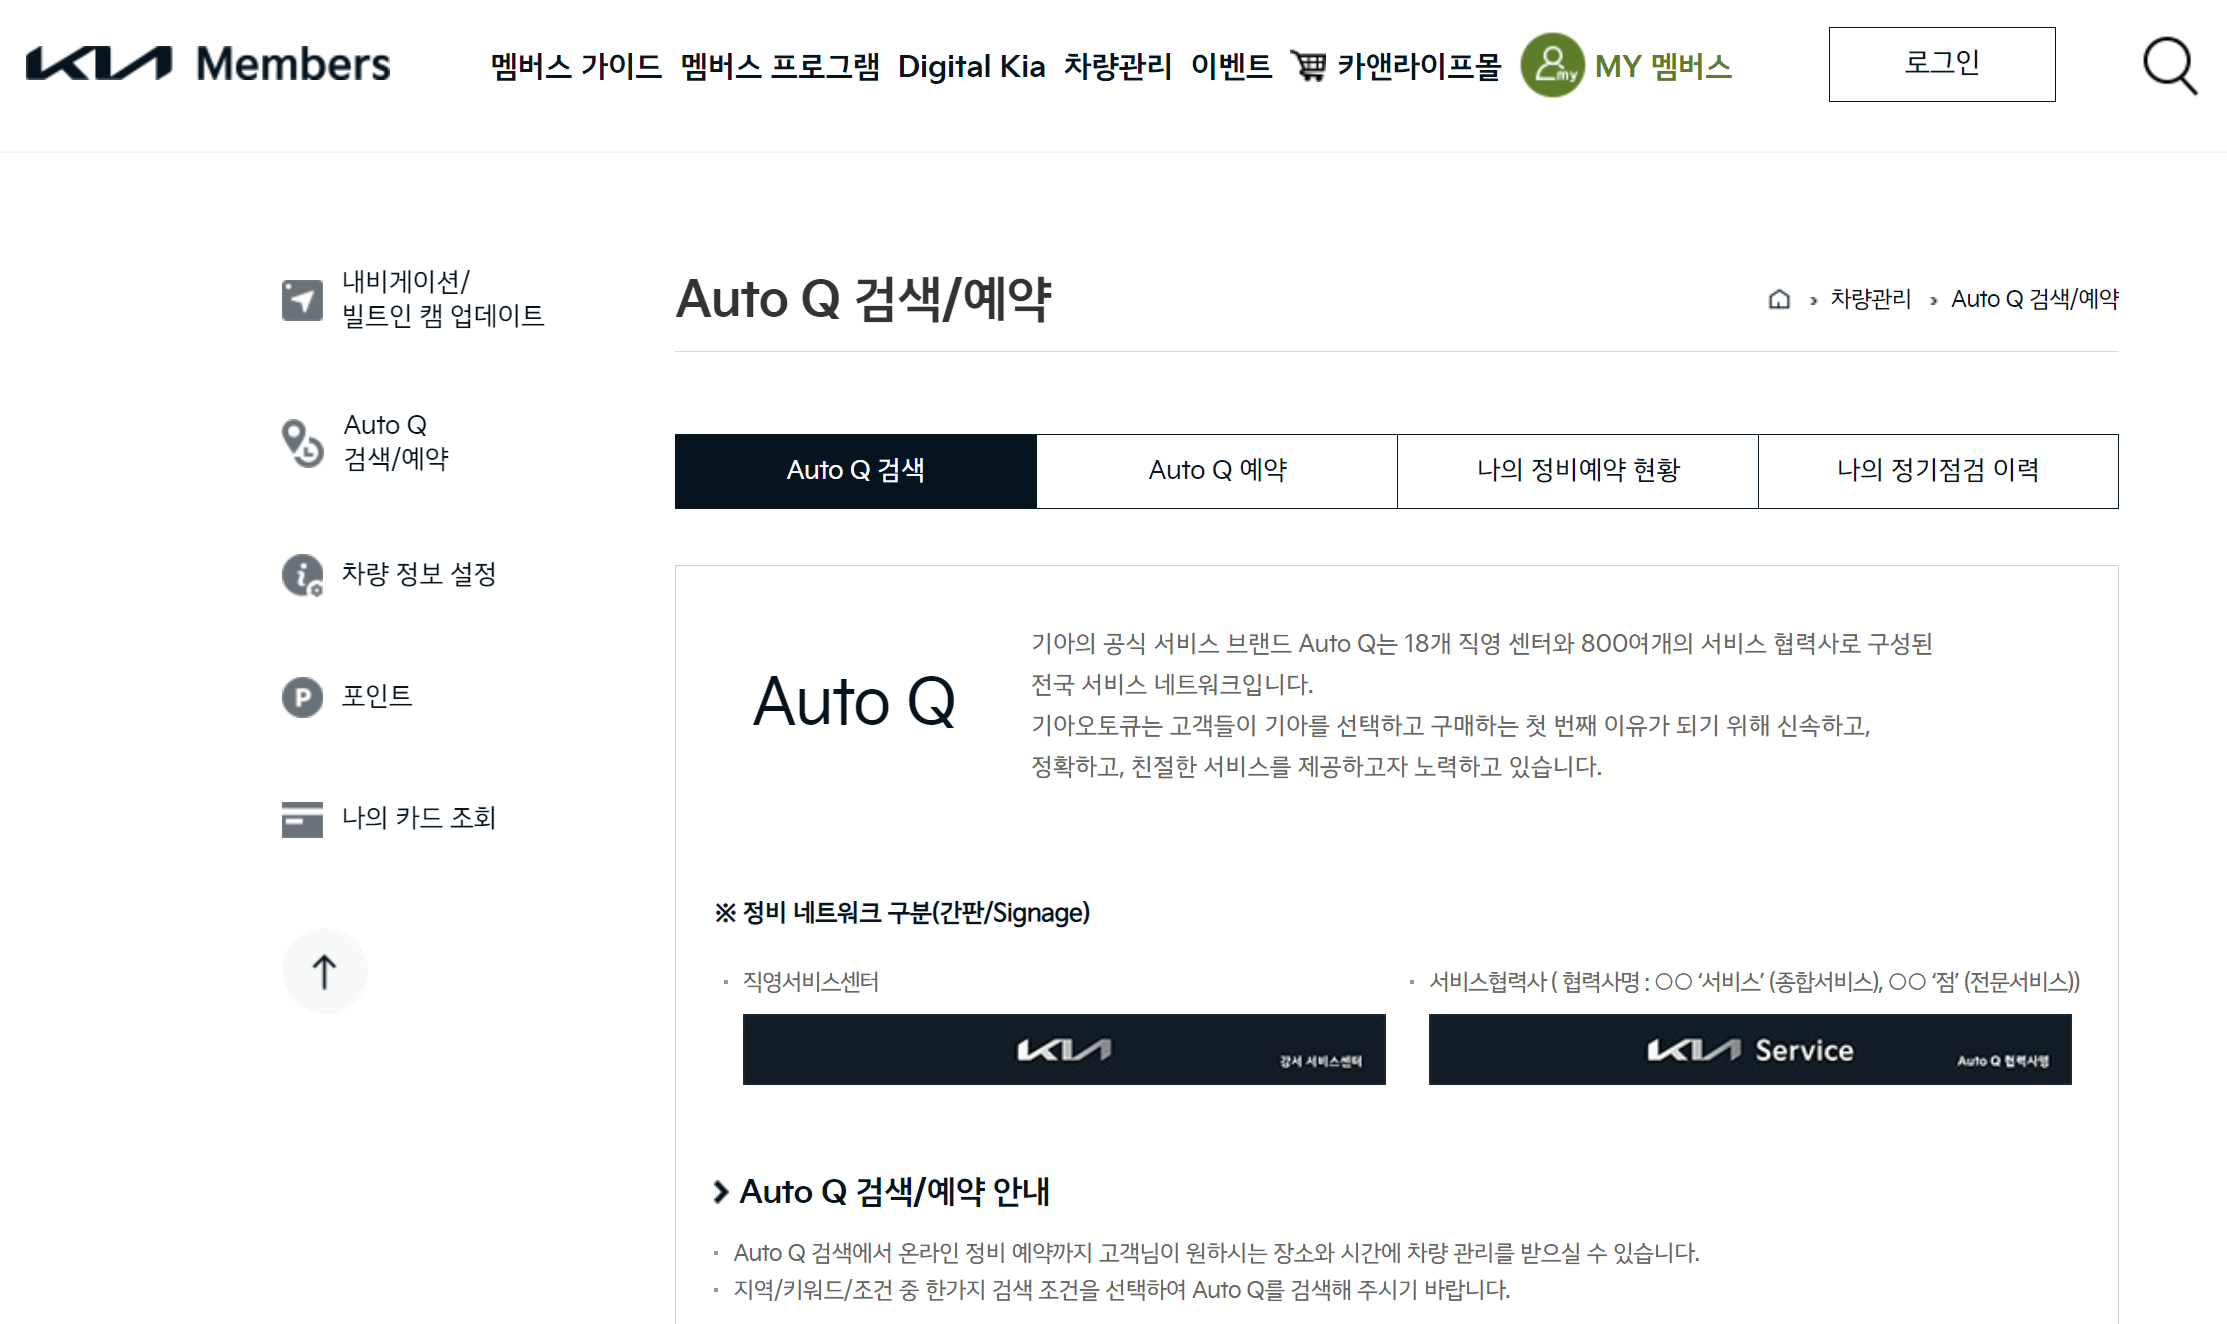 부산,인천 전국 기아자동차 직영서비스센터, 예약 접수방법 안내 (오토큐, Auto Q)